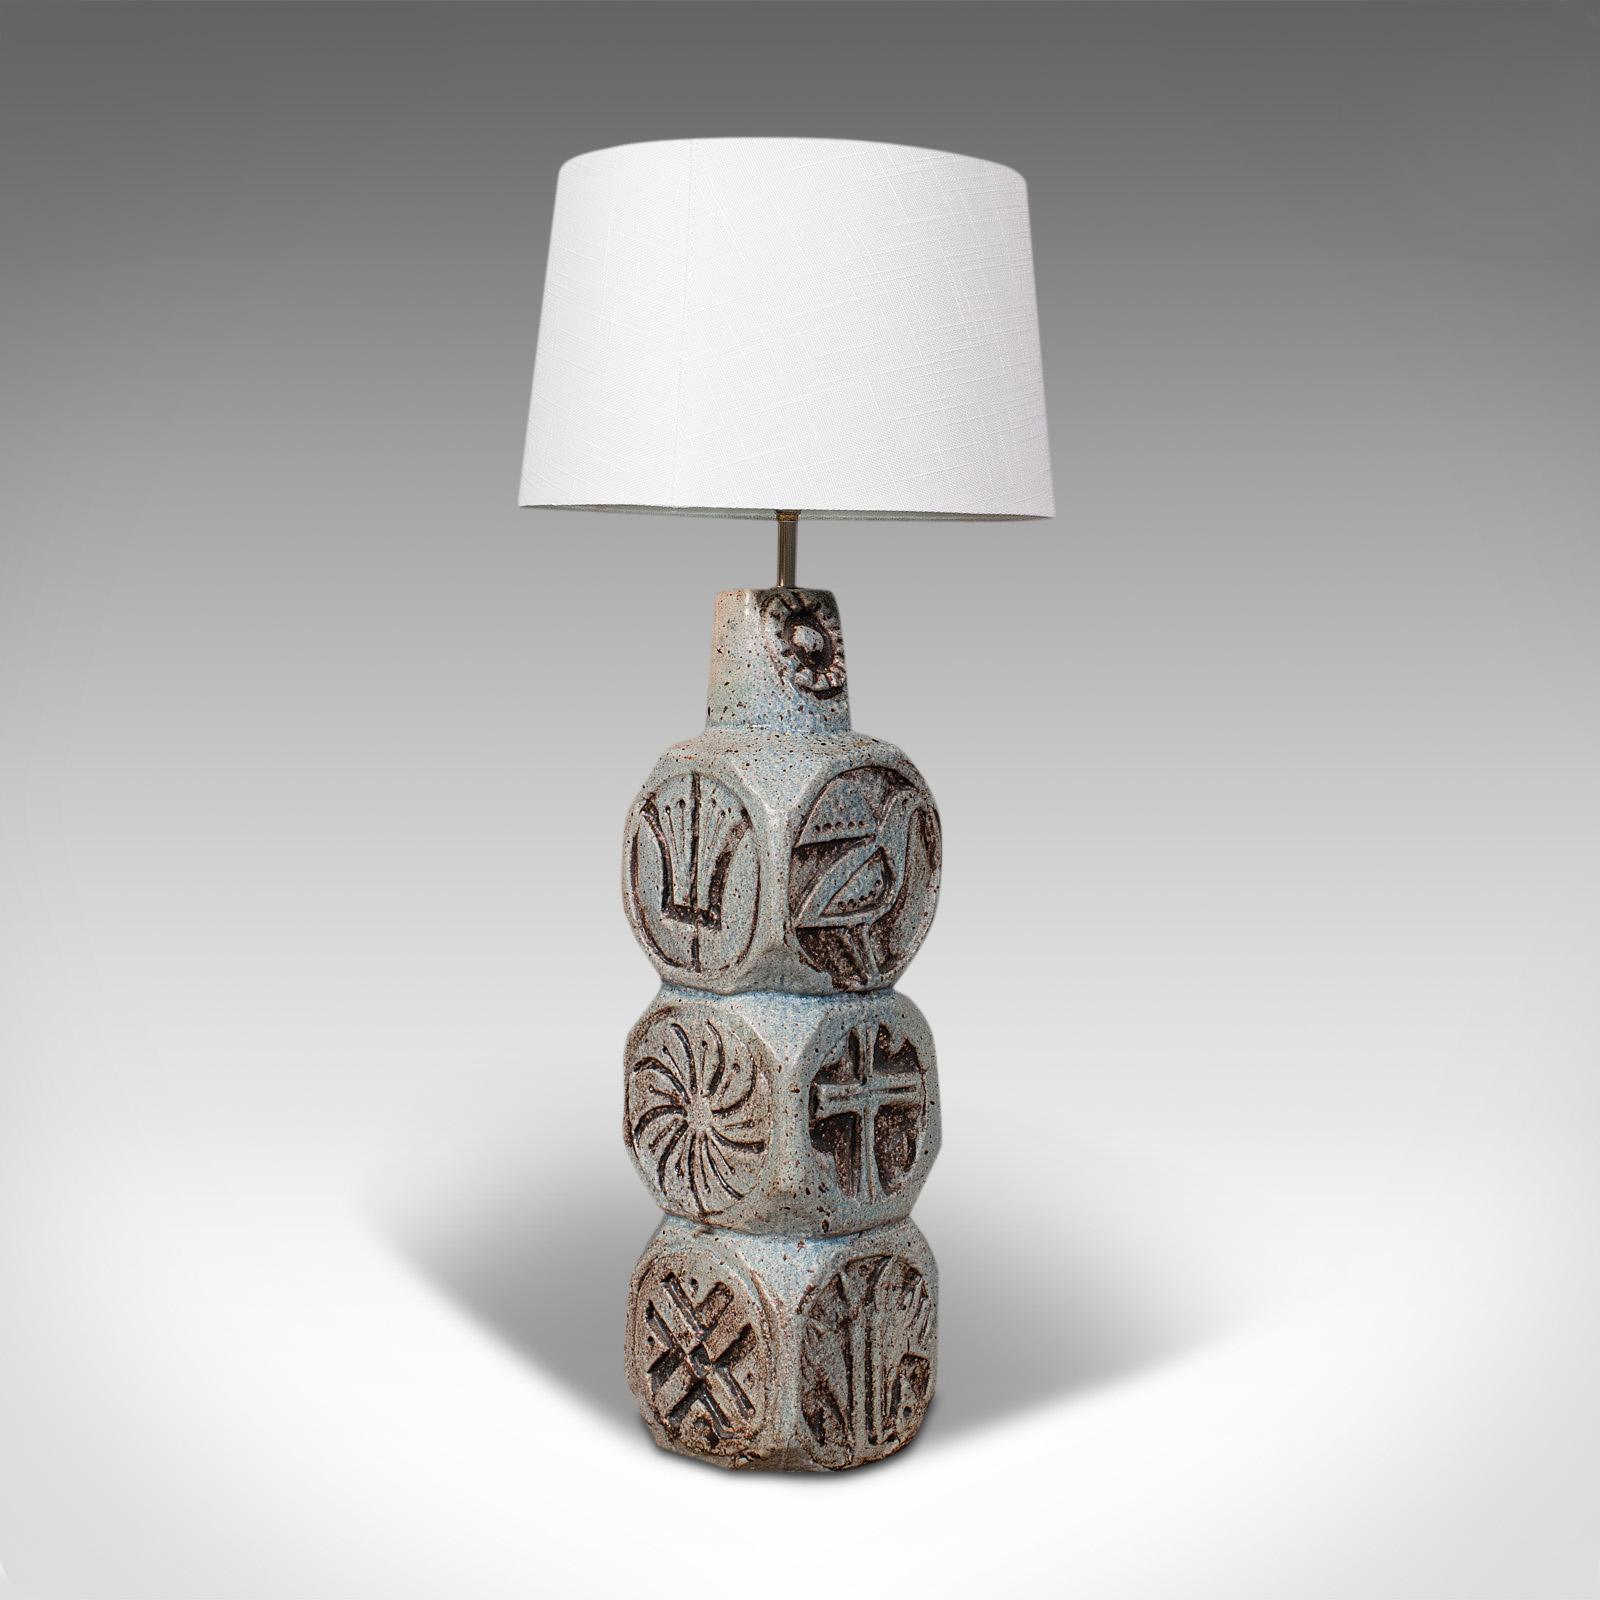 Il s'agit d'une lampe de table vintage. Une lampe d'appoint anglaise en céramique de la manière de Troika, datant de la fin du 20e siècle, vers 1980.

Base distinctive avec une décoration attrayante
Présentant une patine d'usage désirable et en